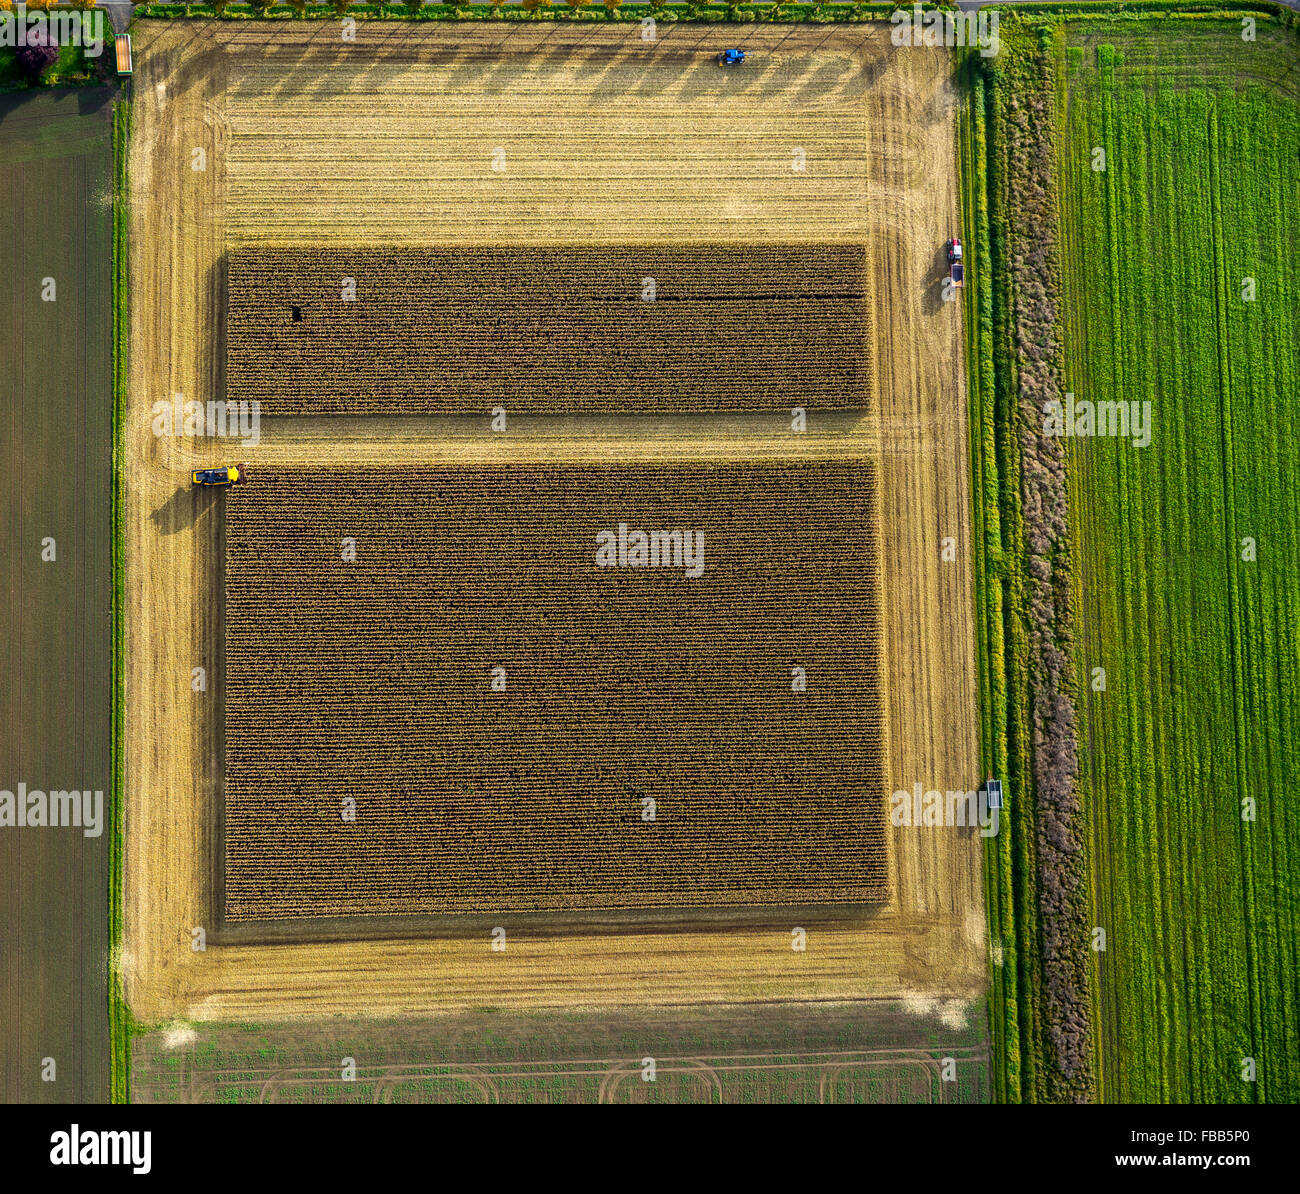 Luftbild, Maisfeld, Maisernte, Mähdrescher im Maisfeld, Landwirtschaft, rechteckiges Feld, Feld, auf der Straße, Stockfoto